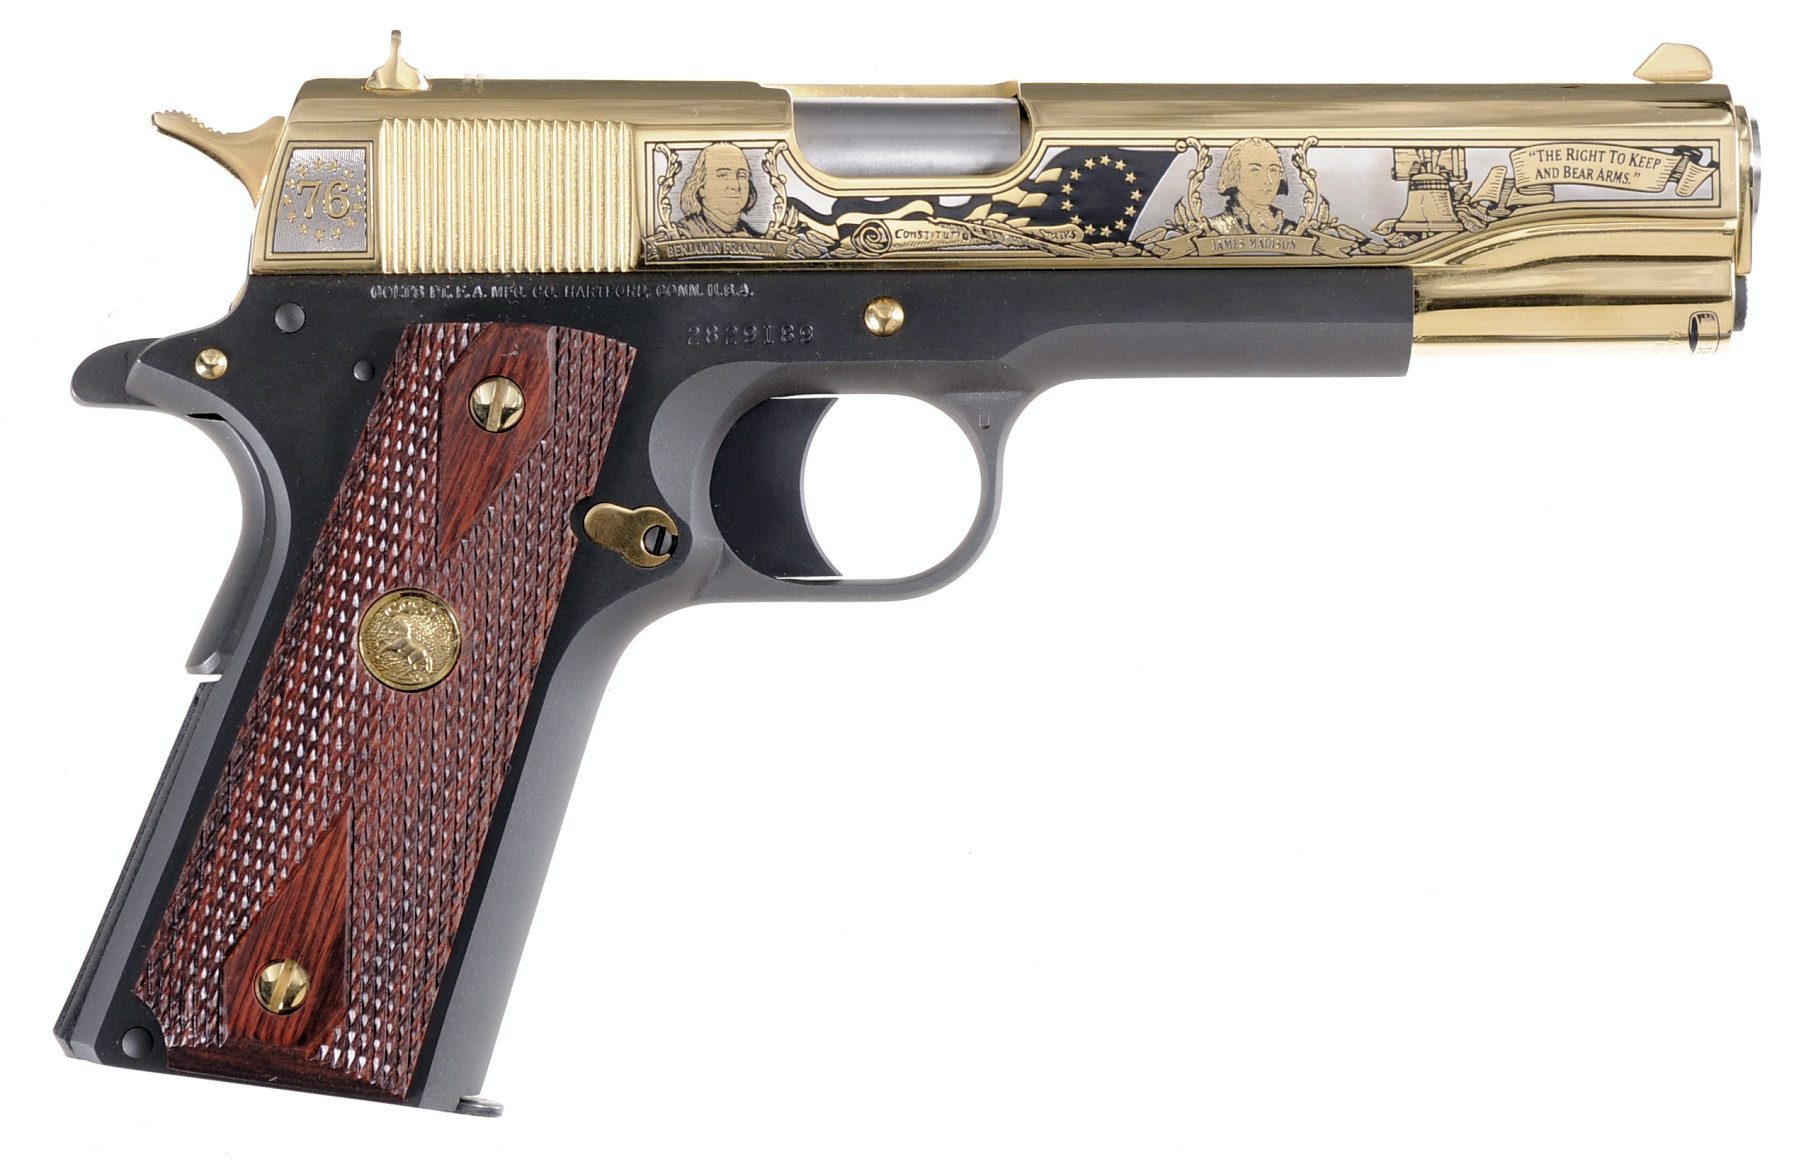 Colt 1911 "Colt 1911 "Founding Fathers Second Amendment Tribute" pistol handgun